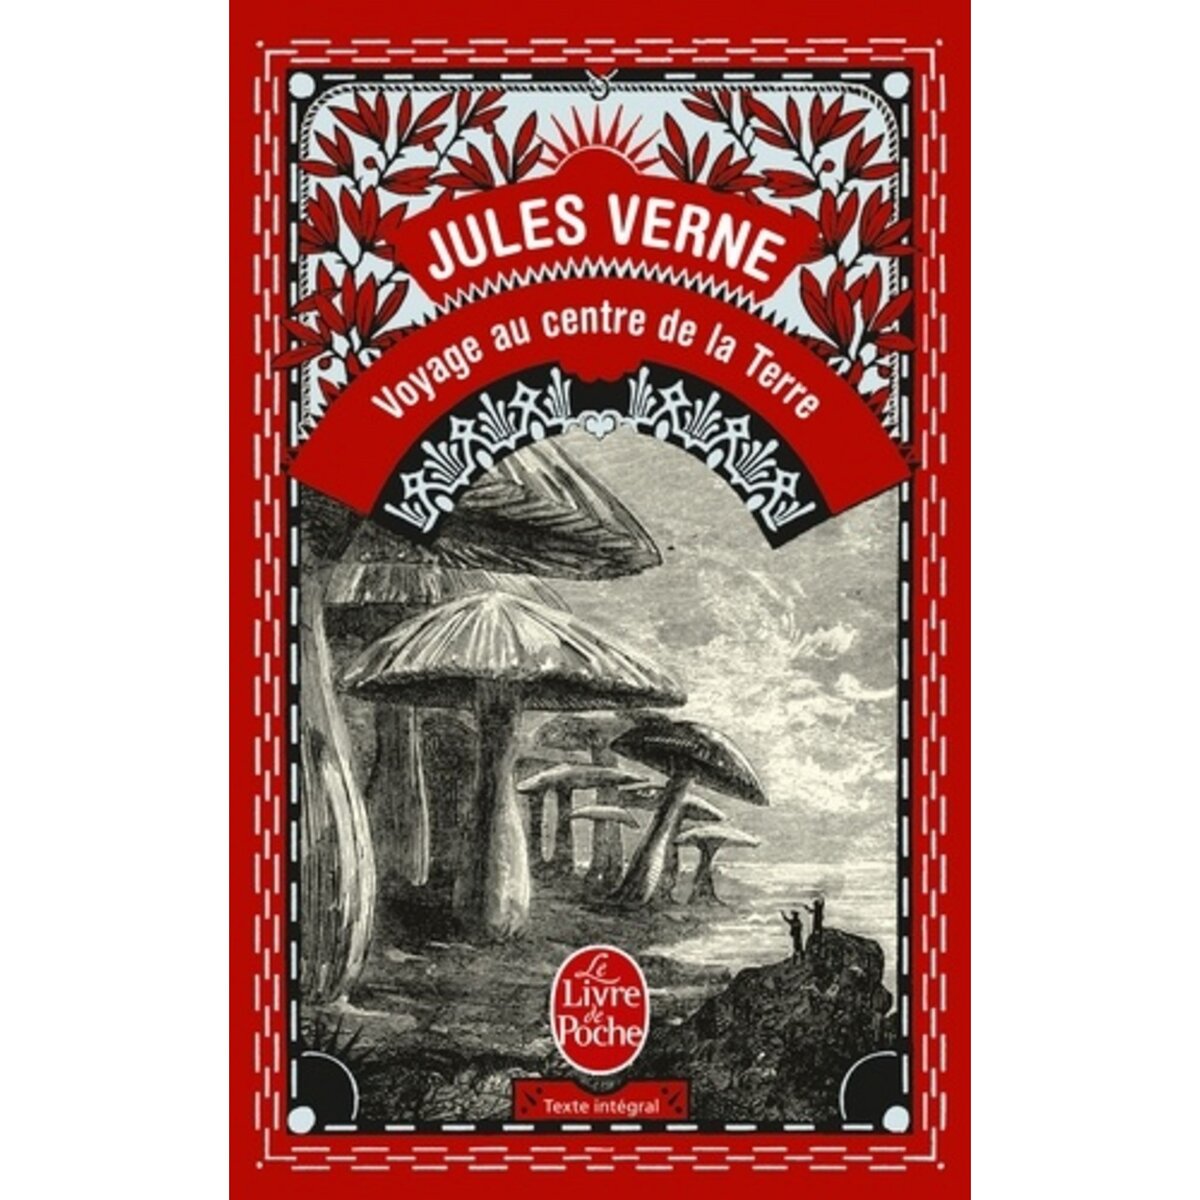  VOYAGE AU CENTRE DE LA TERRE, Verne Jules